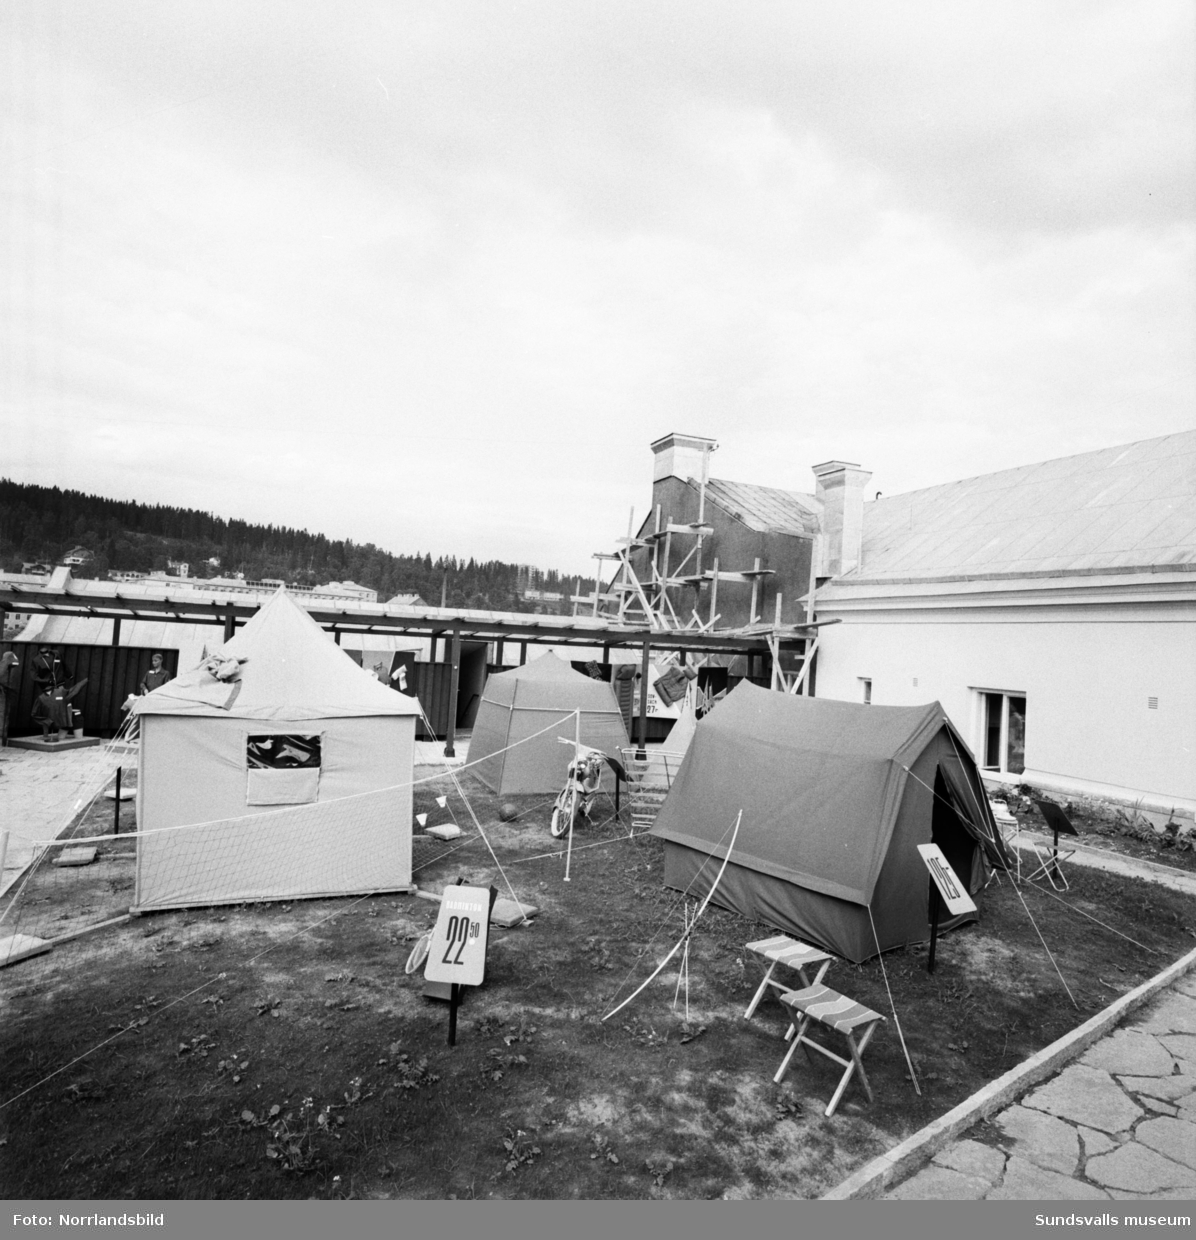 Forum har fritidsutställning med tält och övrig campingutrustning på varuhusets tak.